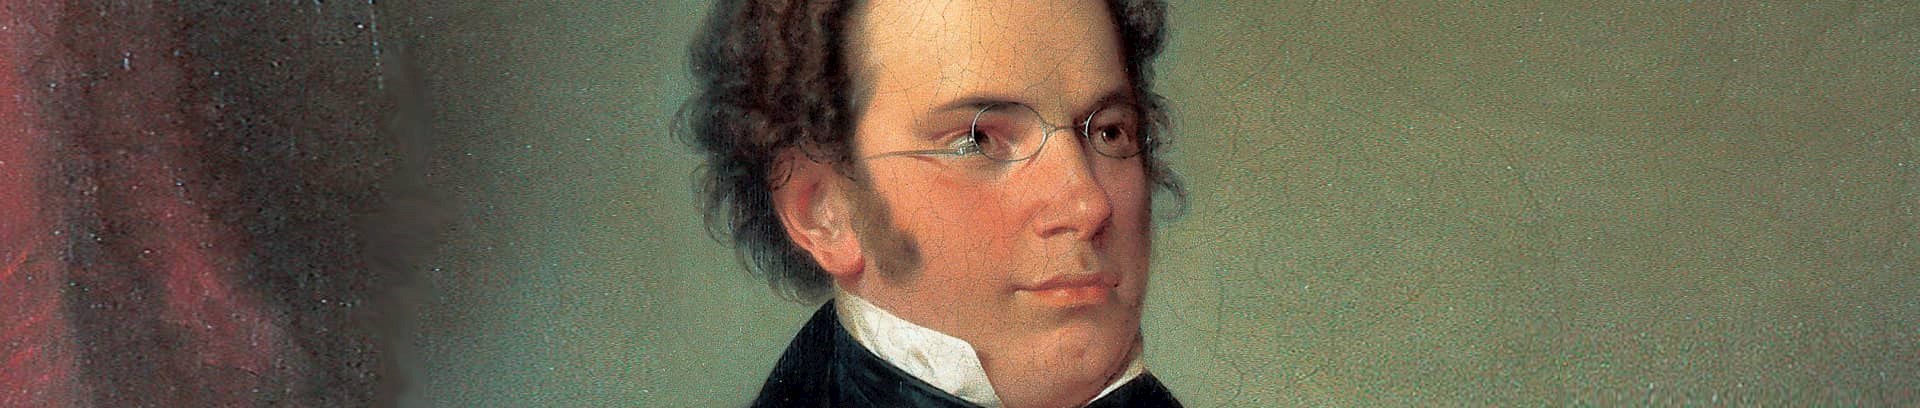 Franz Schubert, musikkursus i FOF Århus